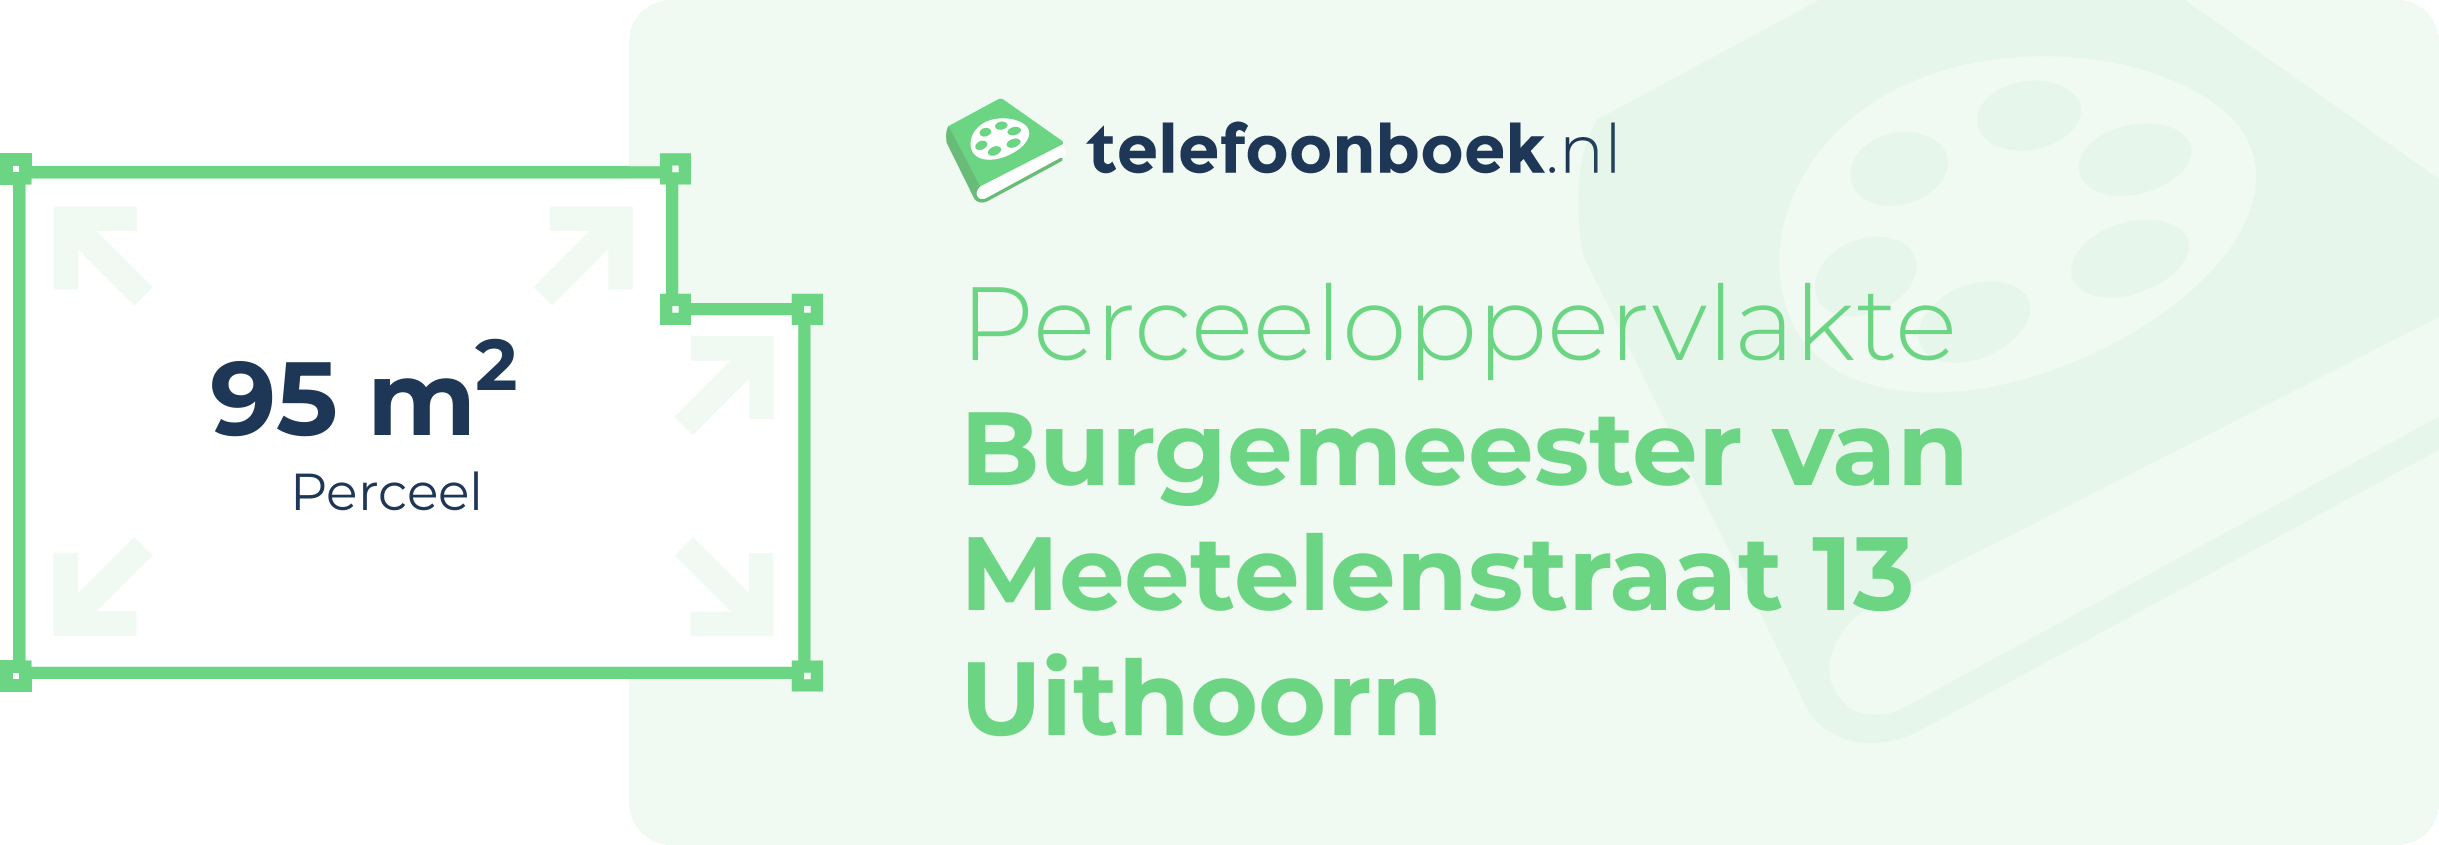 Perceeloppervlakte Burgemeester Van Meetelenstraat 13 Uithoorn